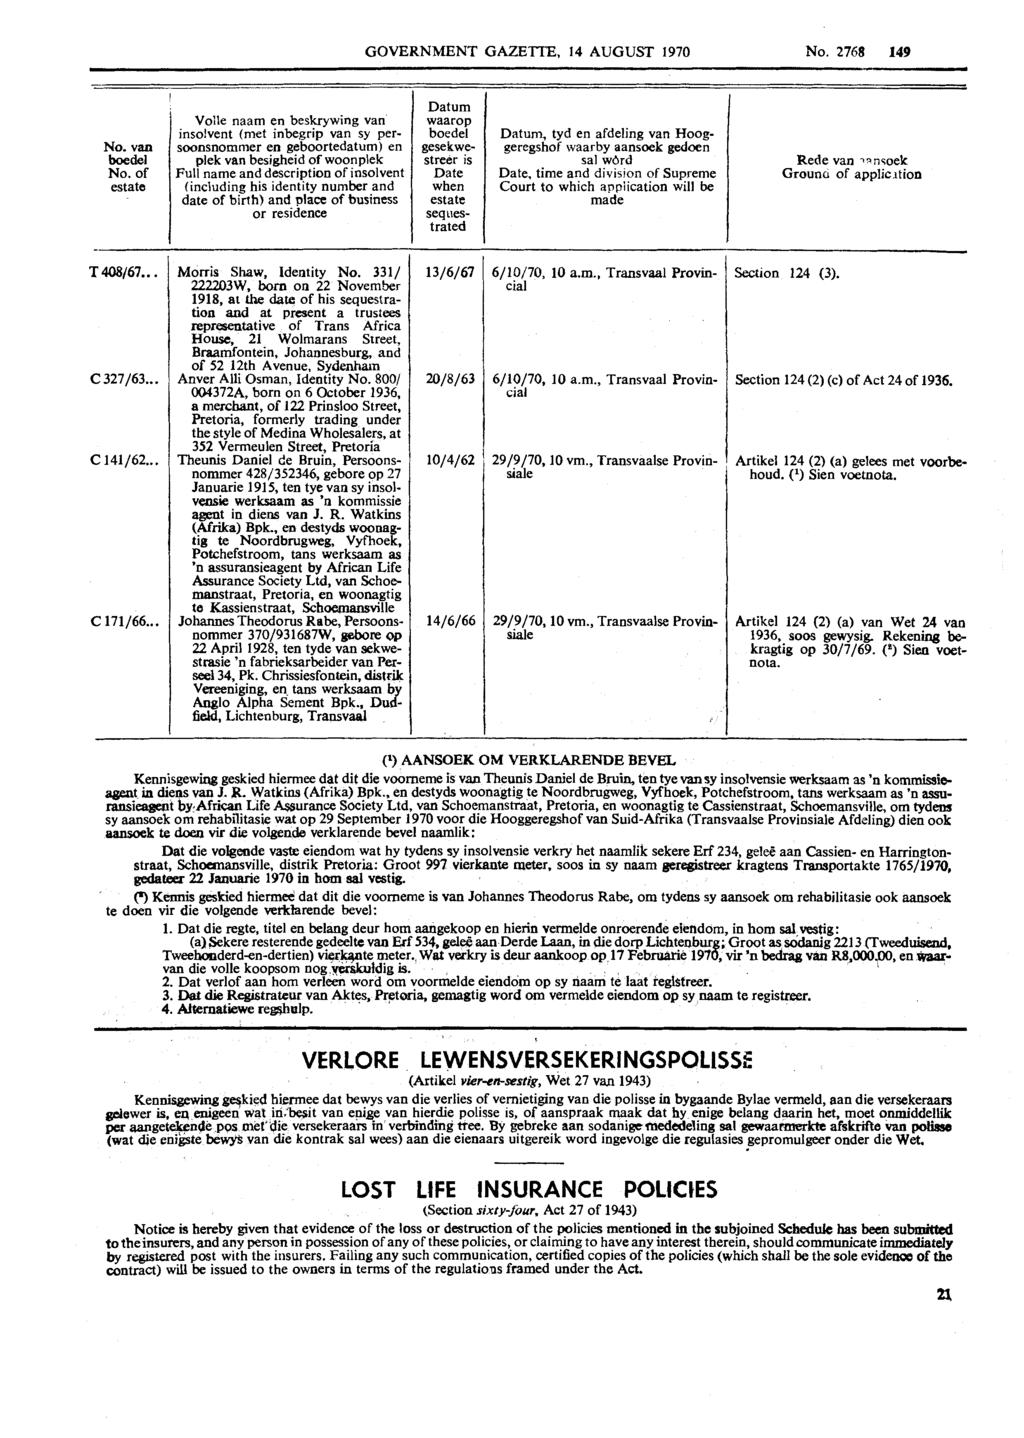 GOVERNMENT GAZETTE, 14 AUGUST 1970 No. 2768 149 No. van boedel No. of estate Vo:le naam en beskrywing van inso!